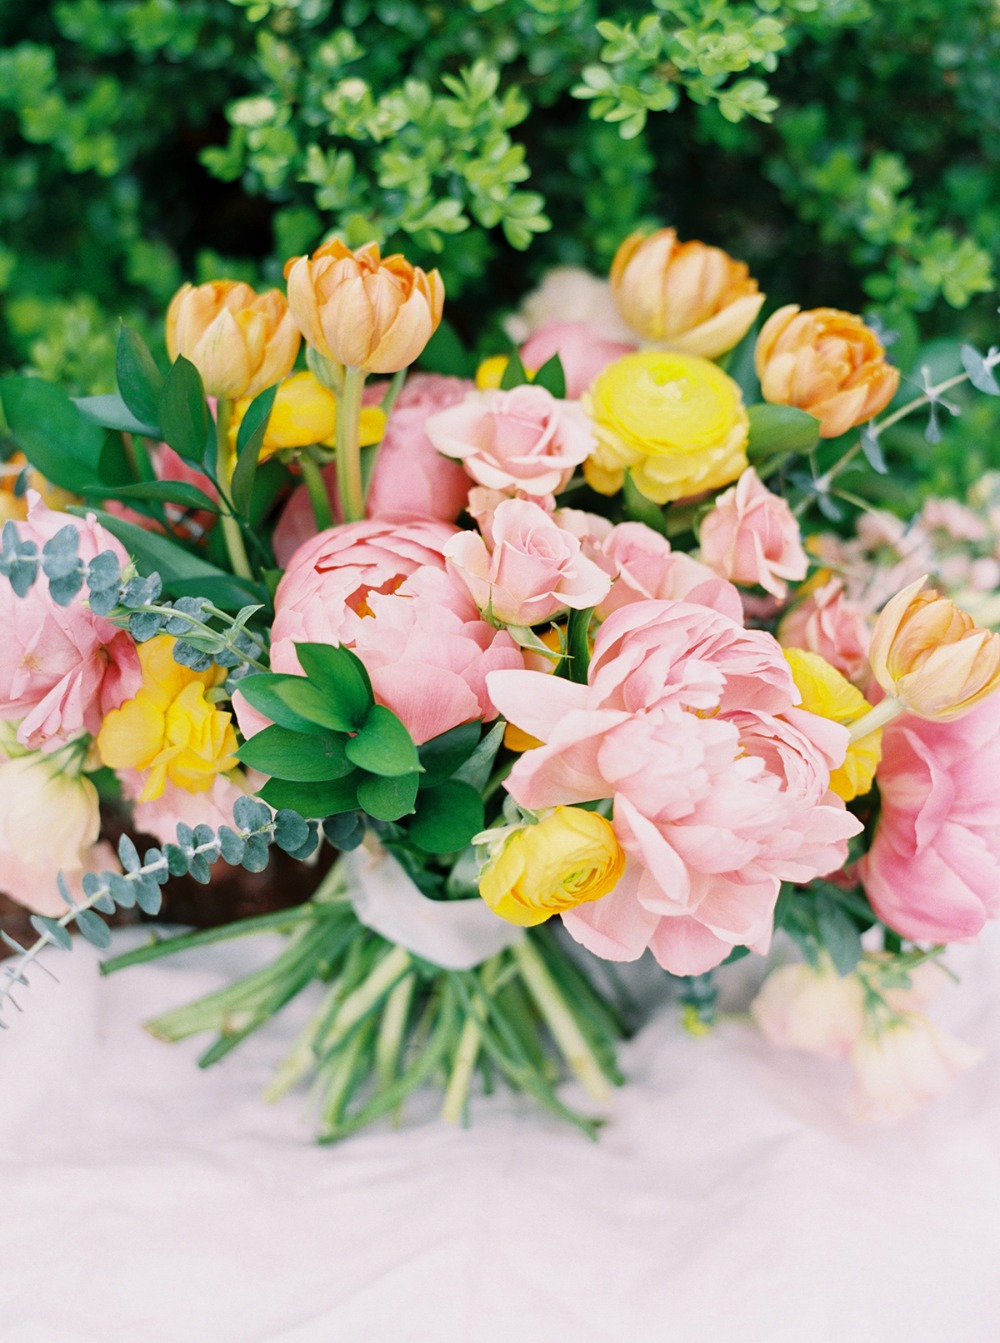 springtime wedding bouquet idea